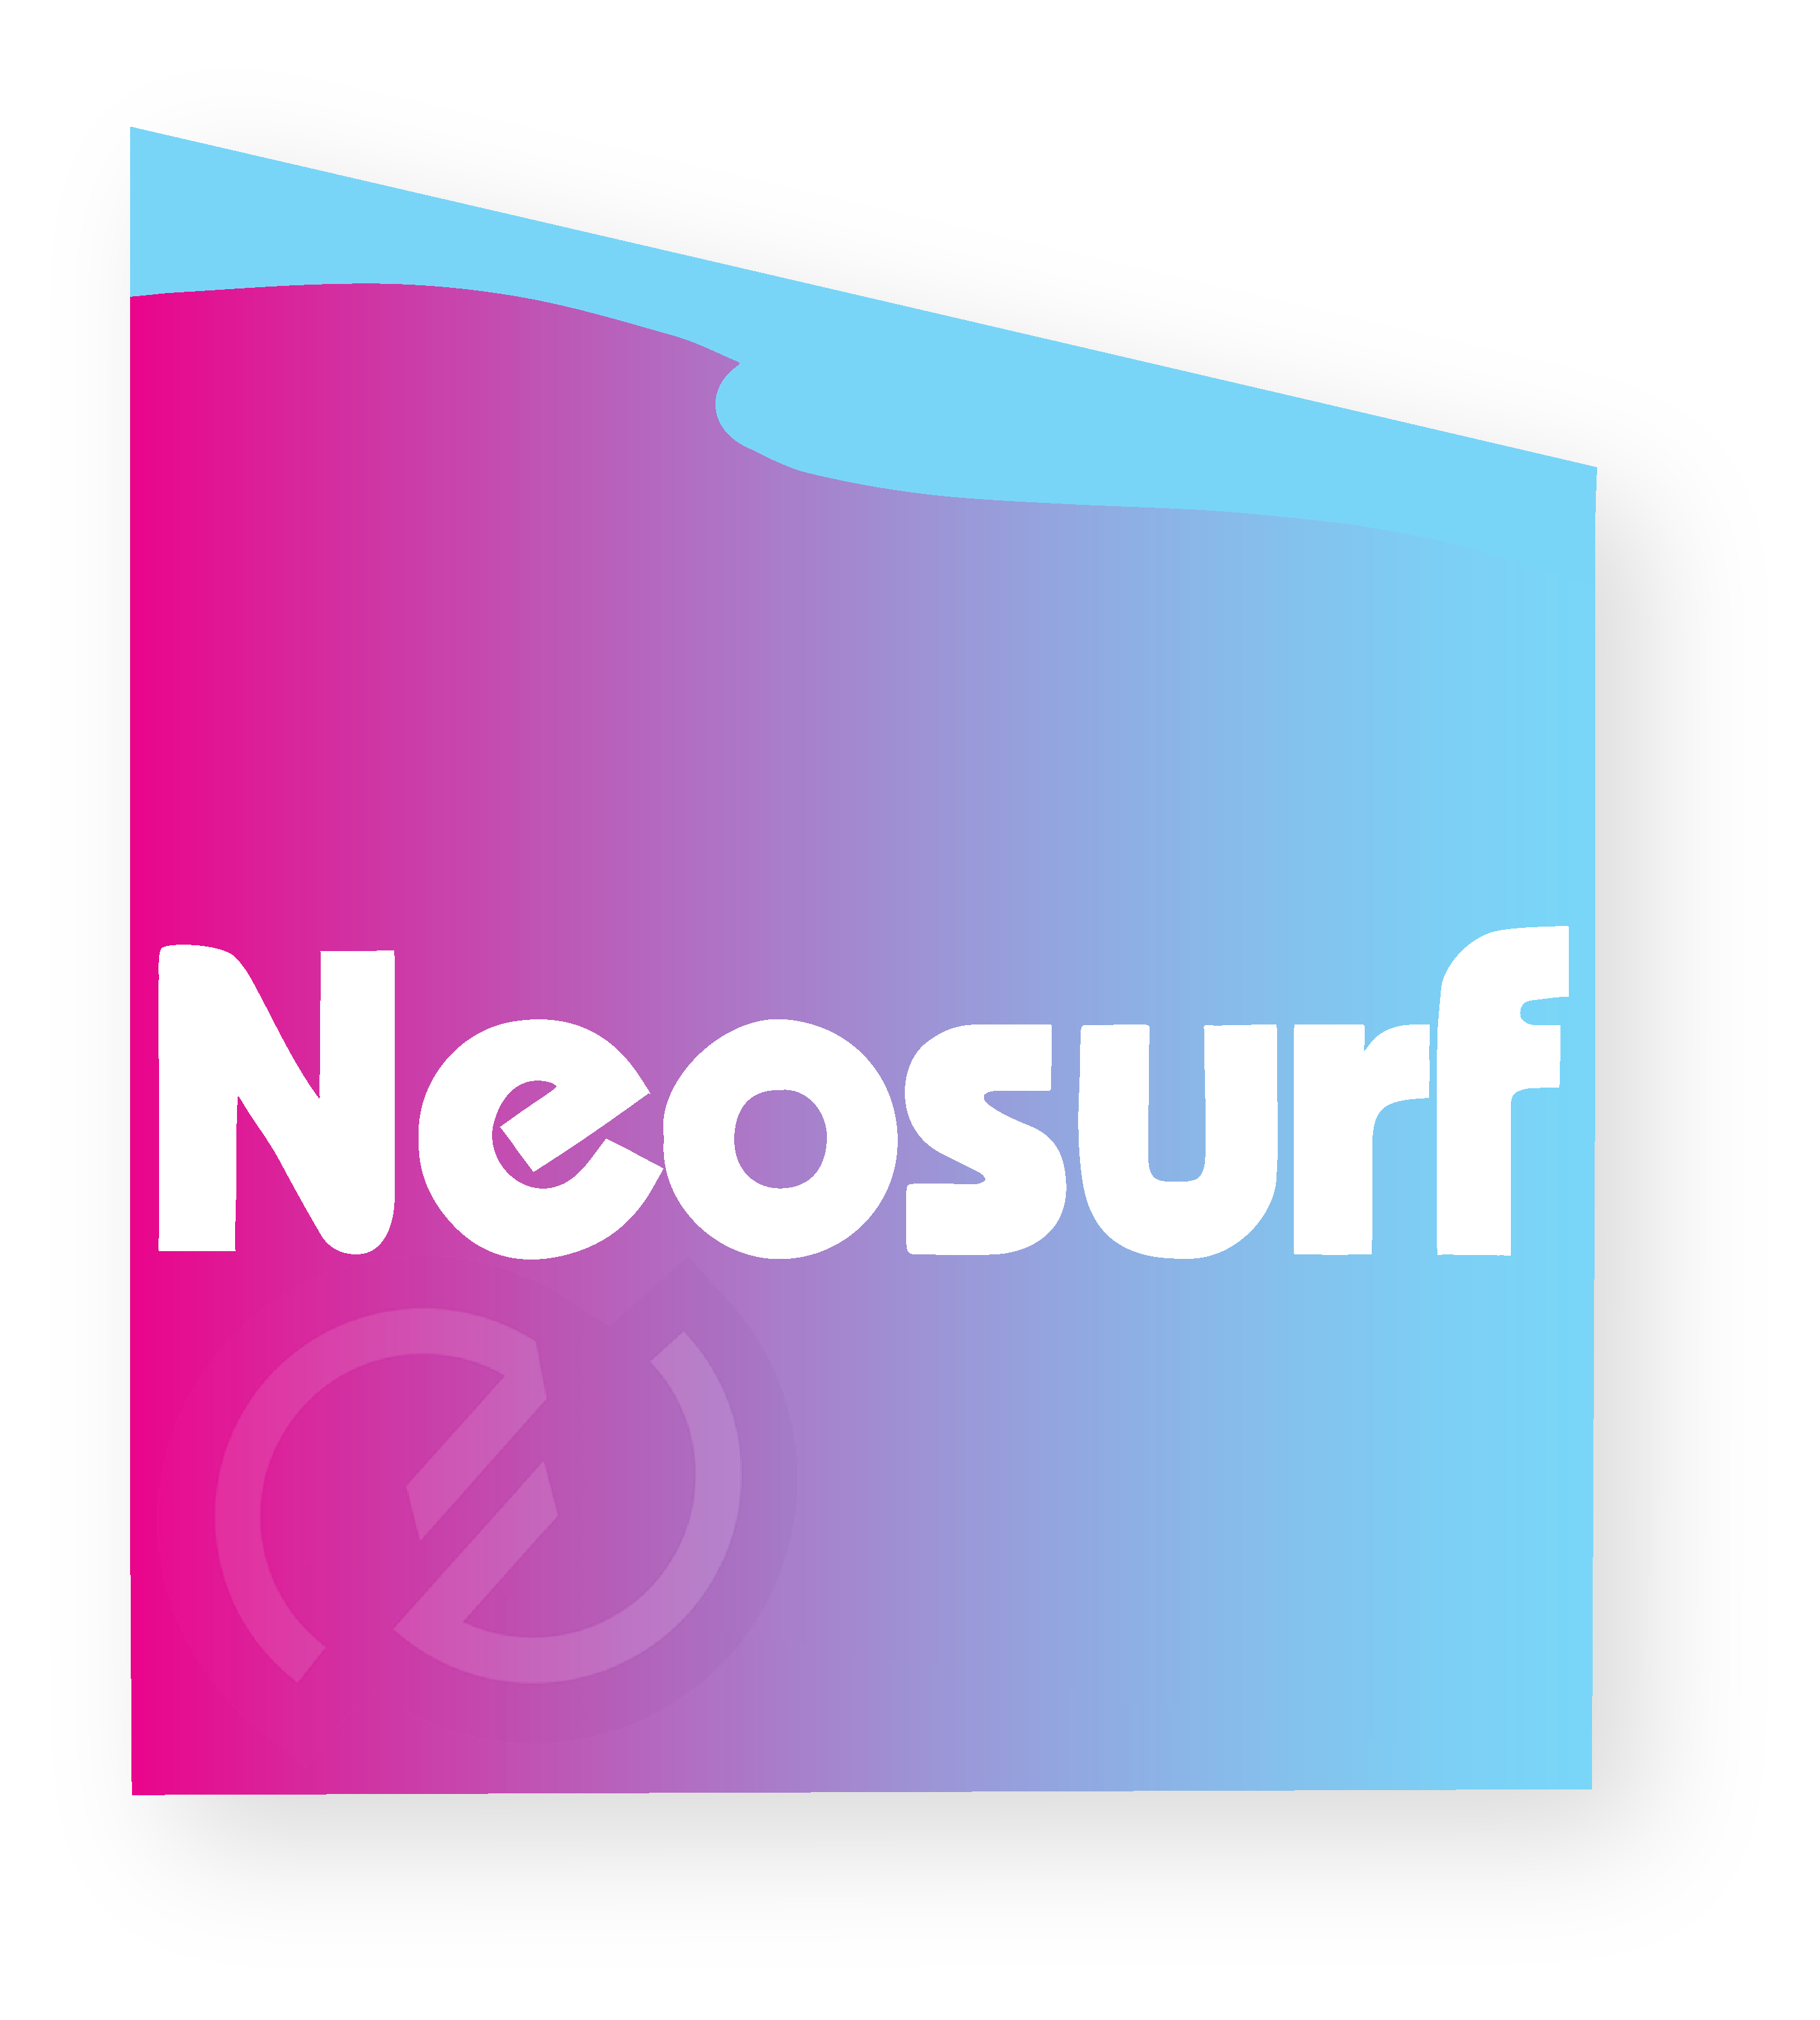 Image logo Neosurf